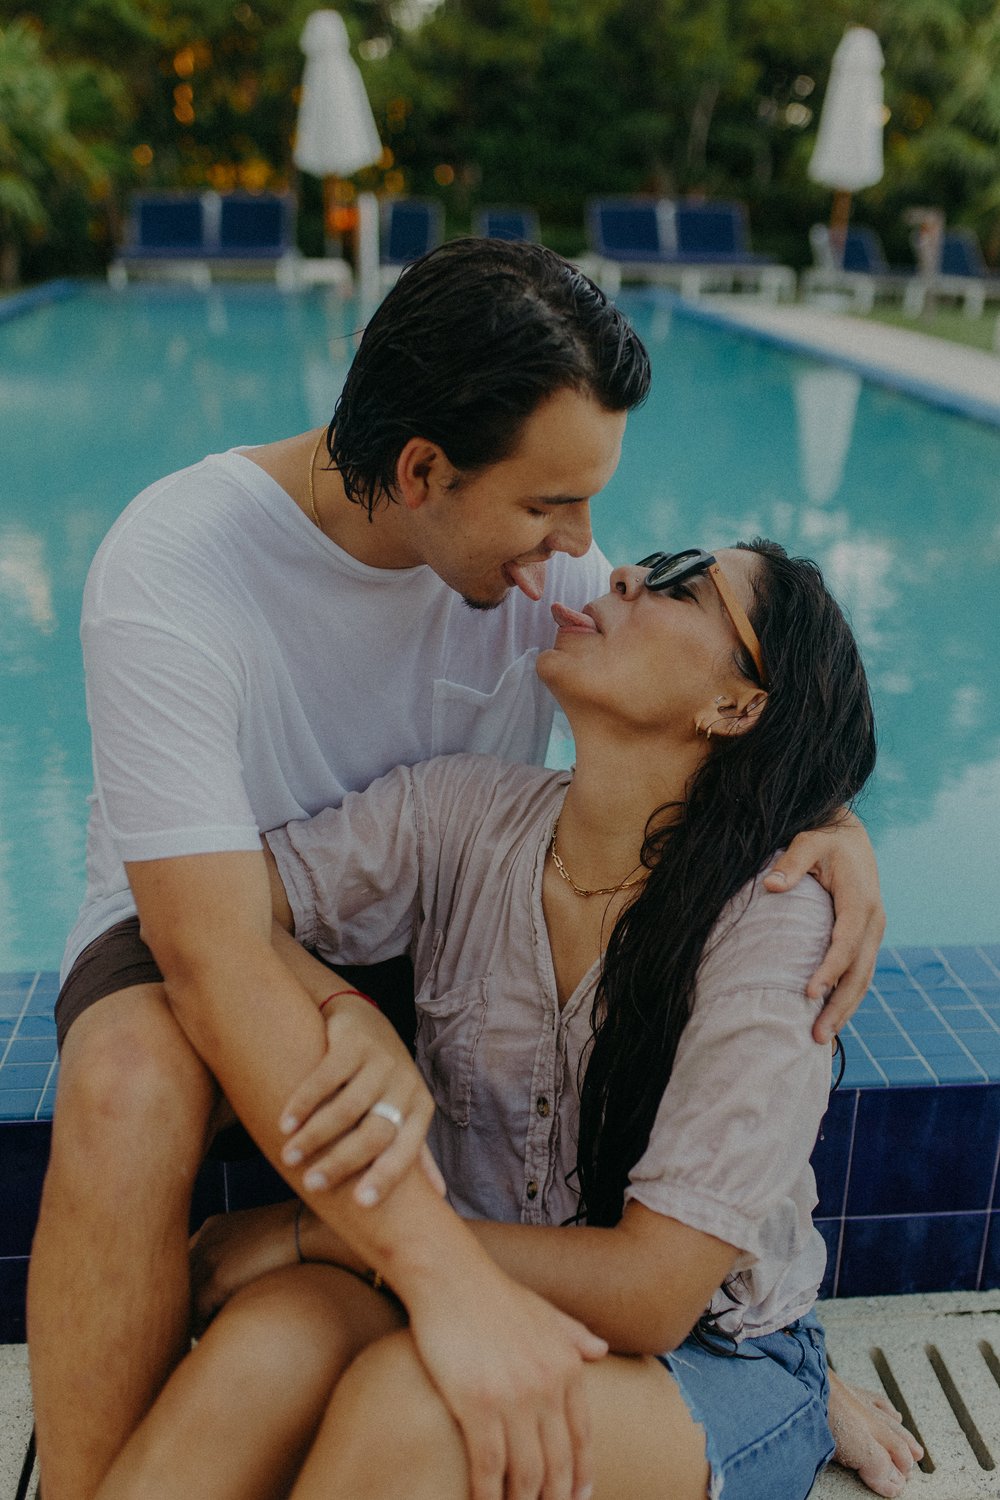 Miami Beach couples photoshoot